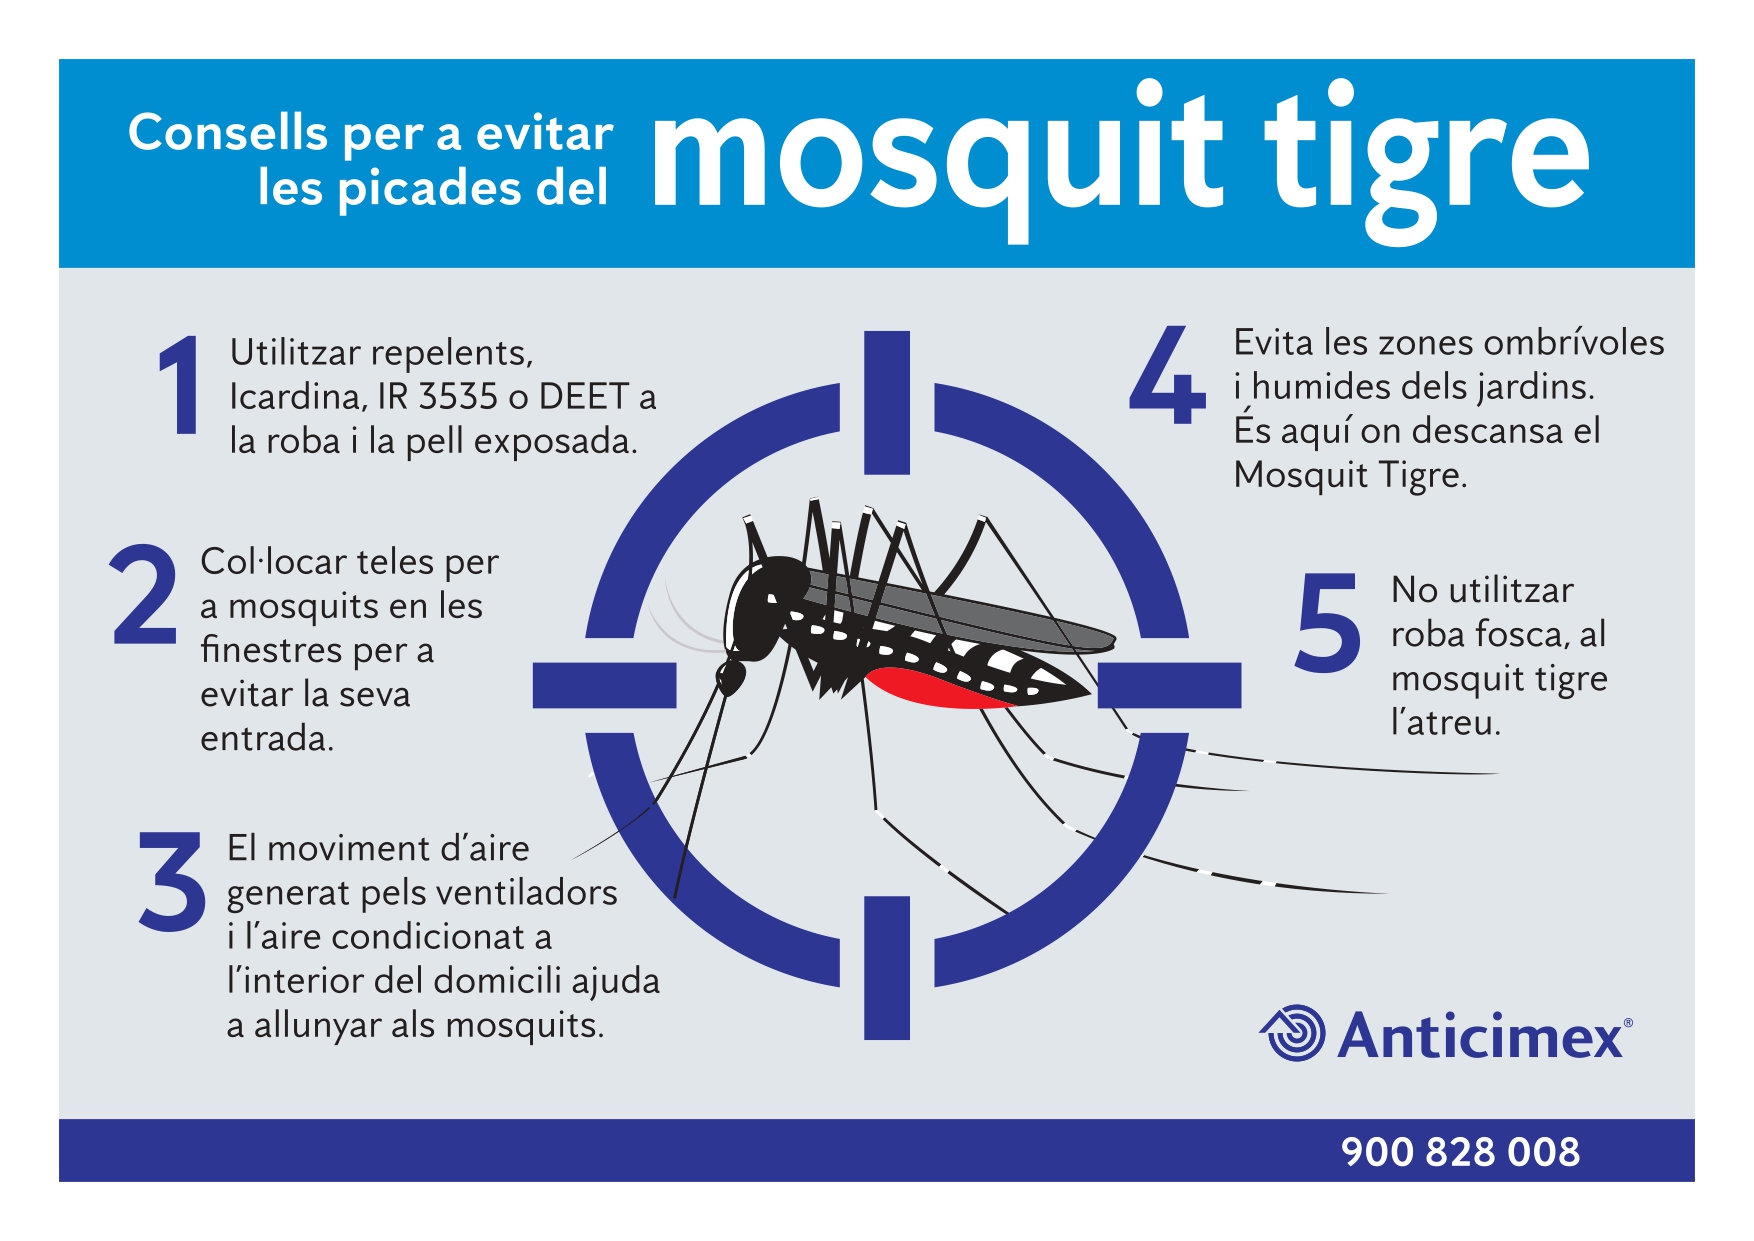 Consells per prevenir el mosquit tigre